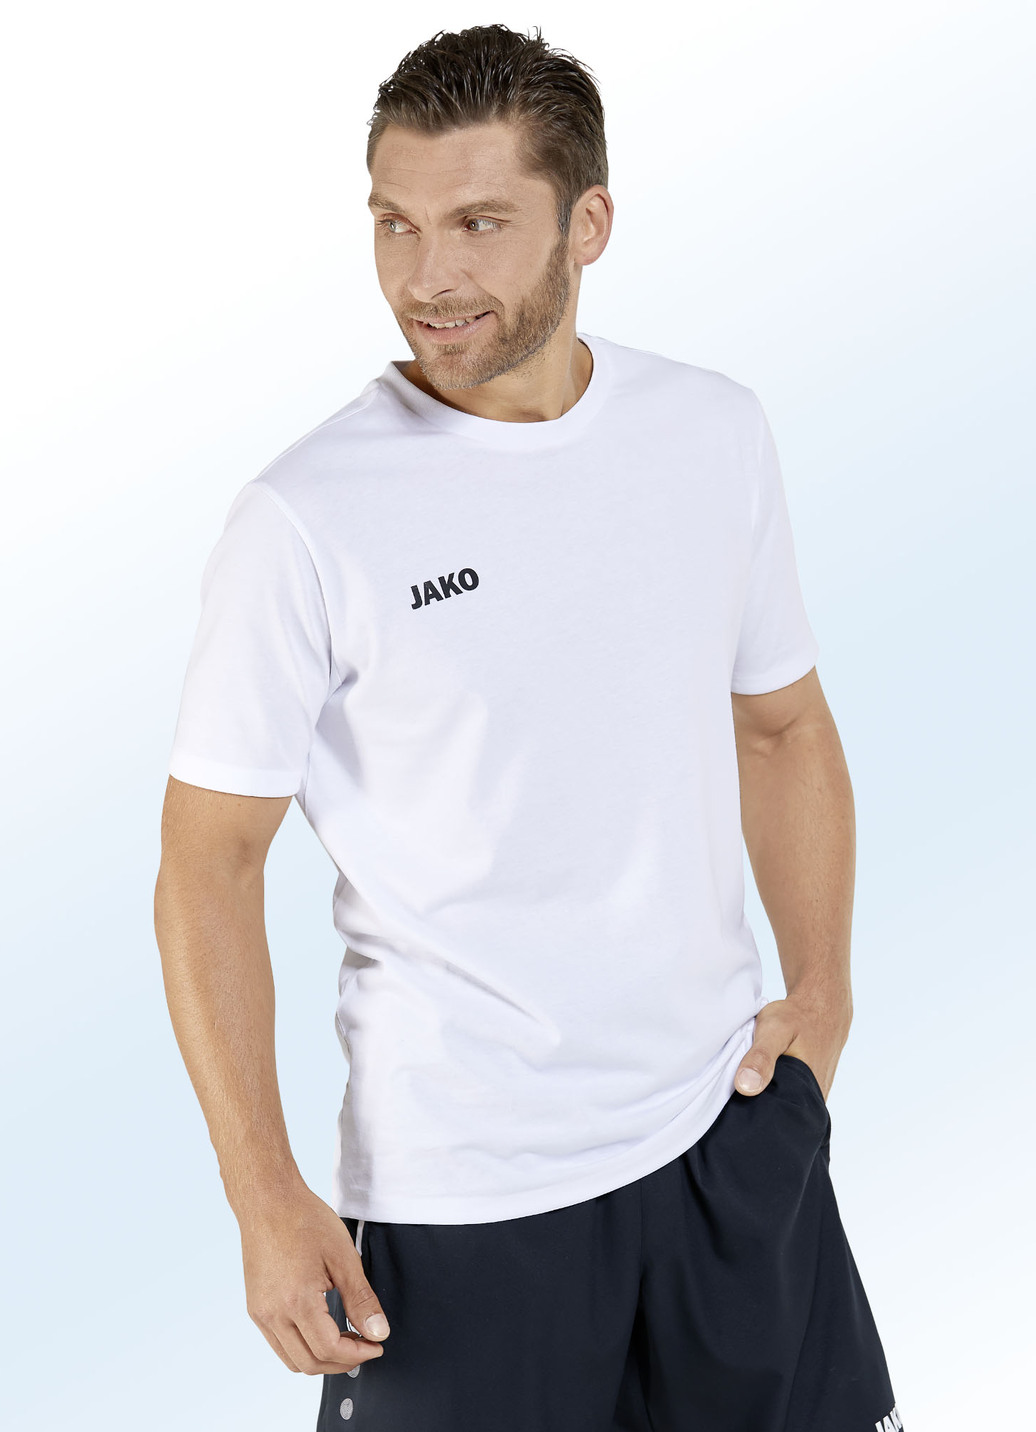 Doppelpack Shirt von "Jako" in 6 Farben, Größe S (44), Weiss-Marine von Jako